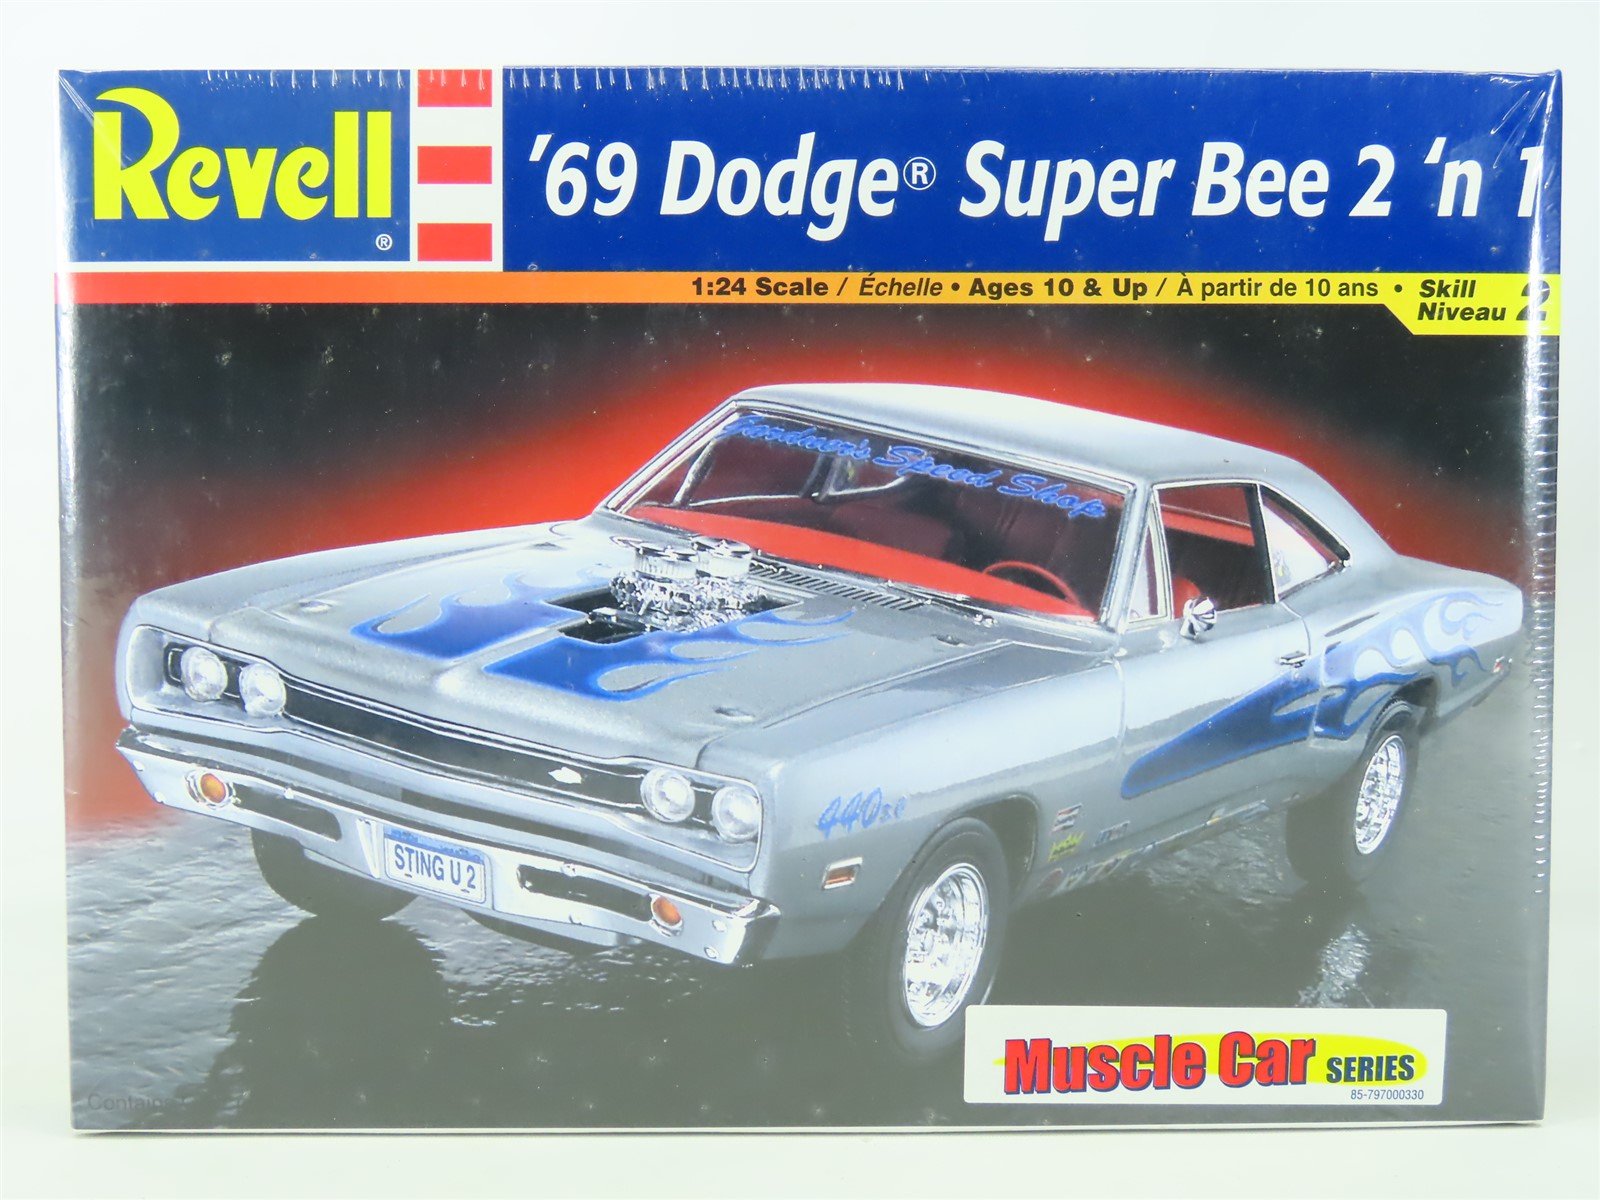 1:24 Scale Revell Monogram Model Car Kit #85-2363 '69 Dodge Super Bee 2 'n 1